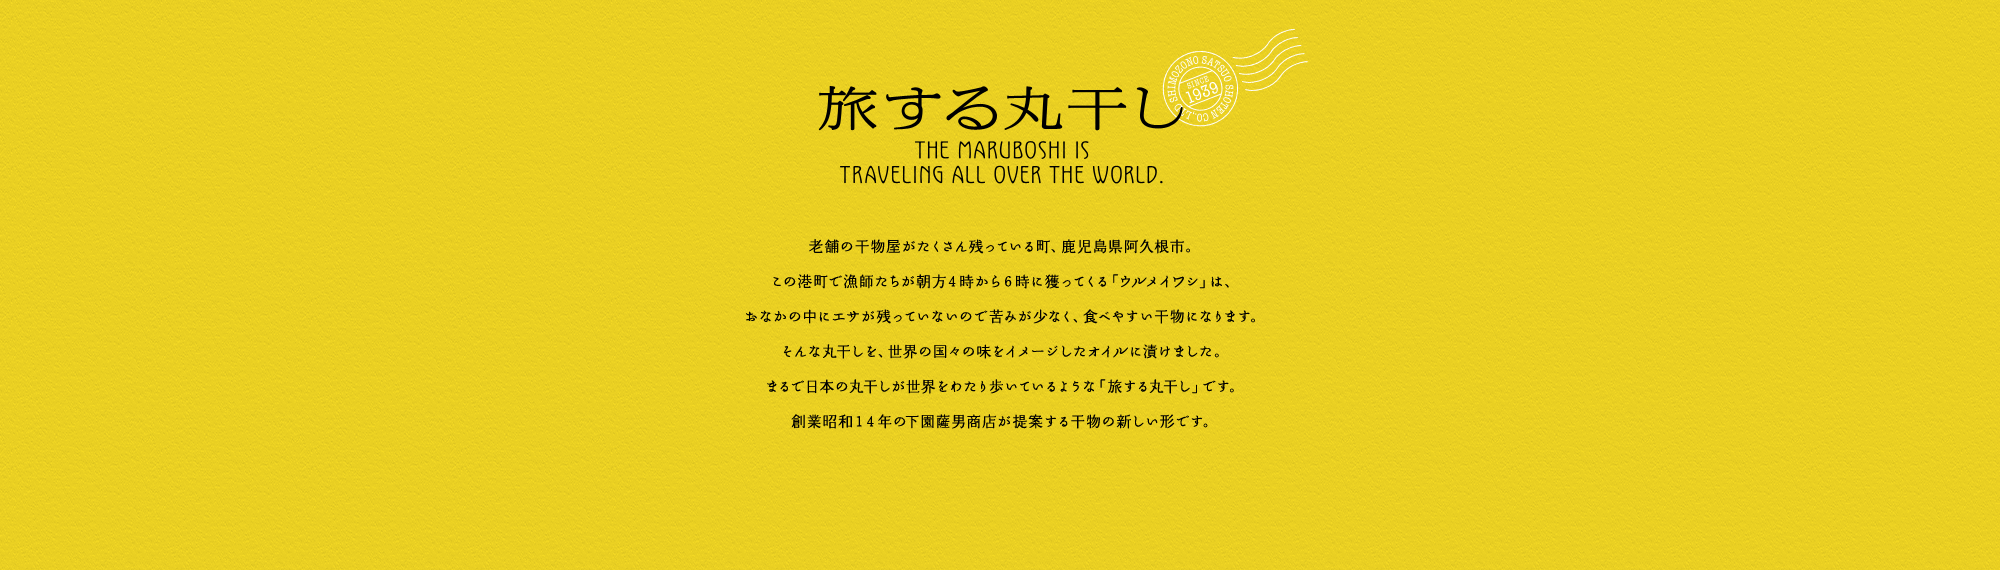 旅する丸干し THE MARUBOSHI IS TRAVELING ALL OVER THE WORLD.